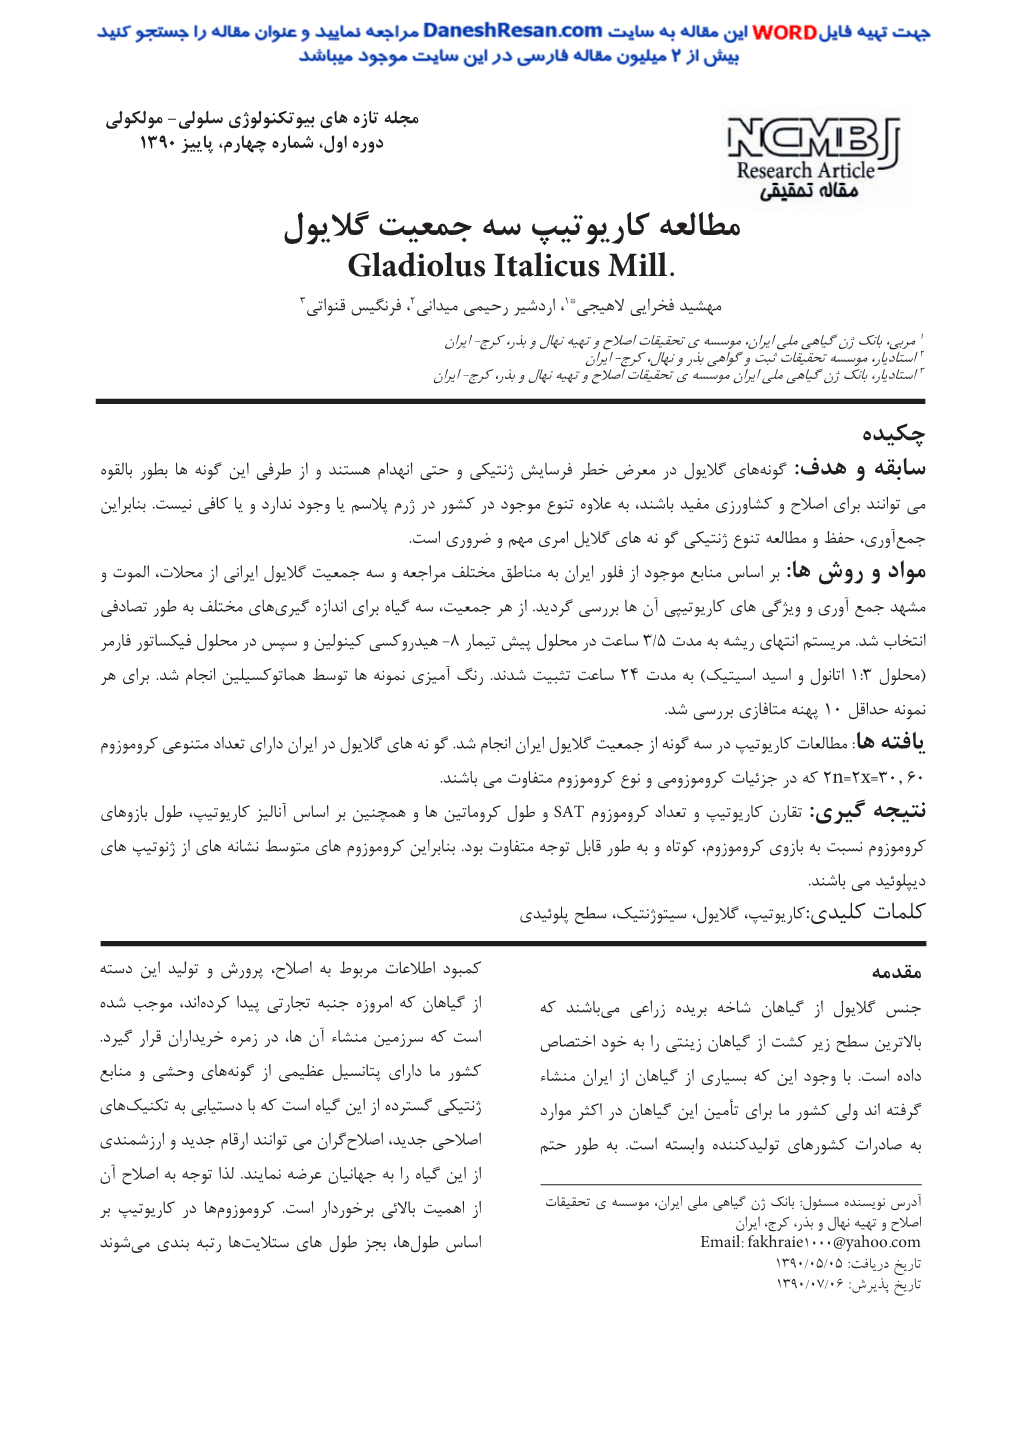 Karyotypic Studies of Gladiolus Italicus Mill Population